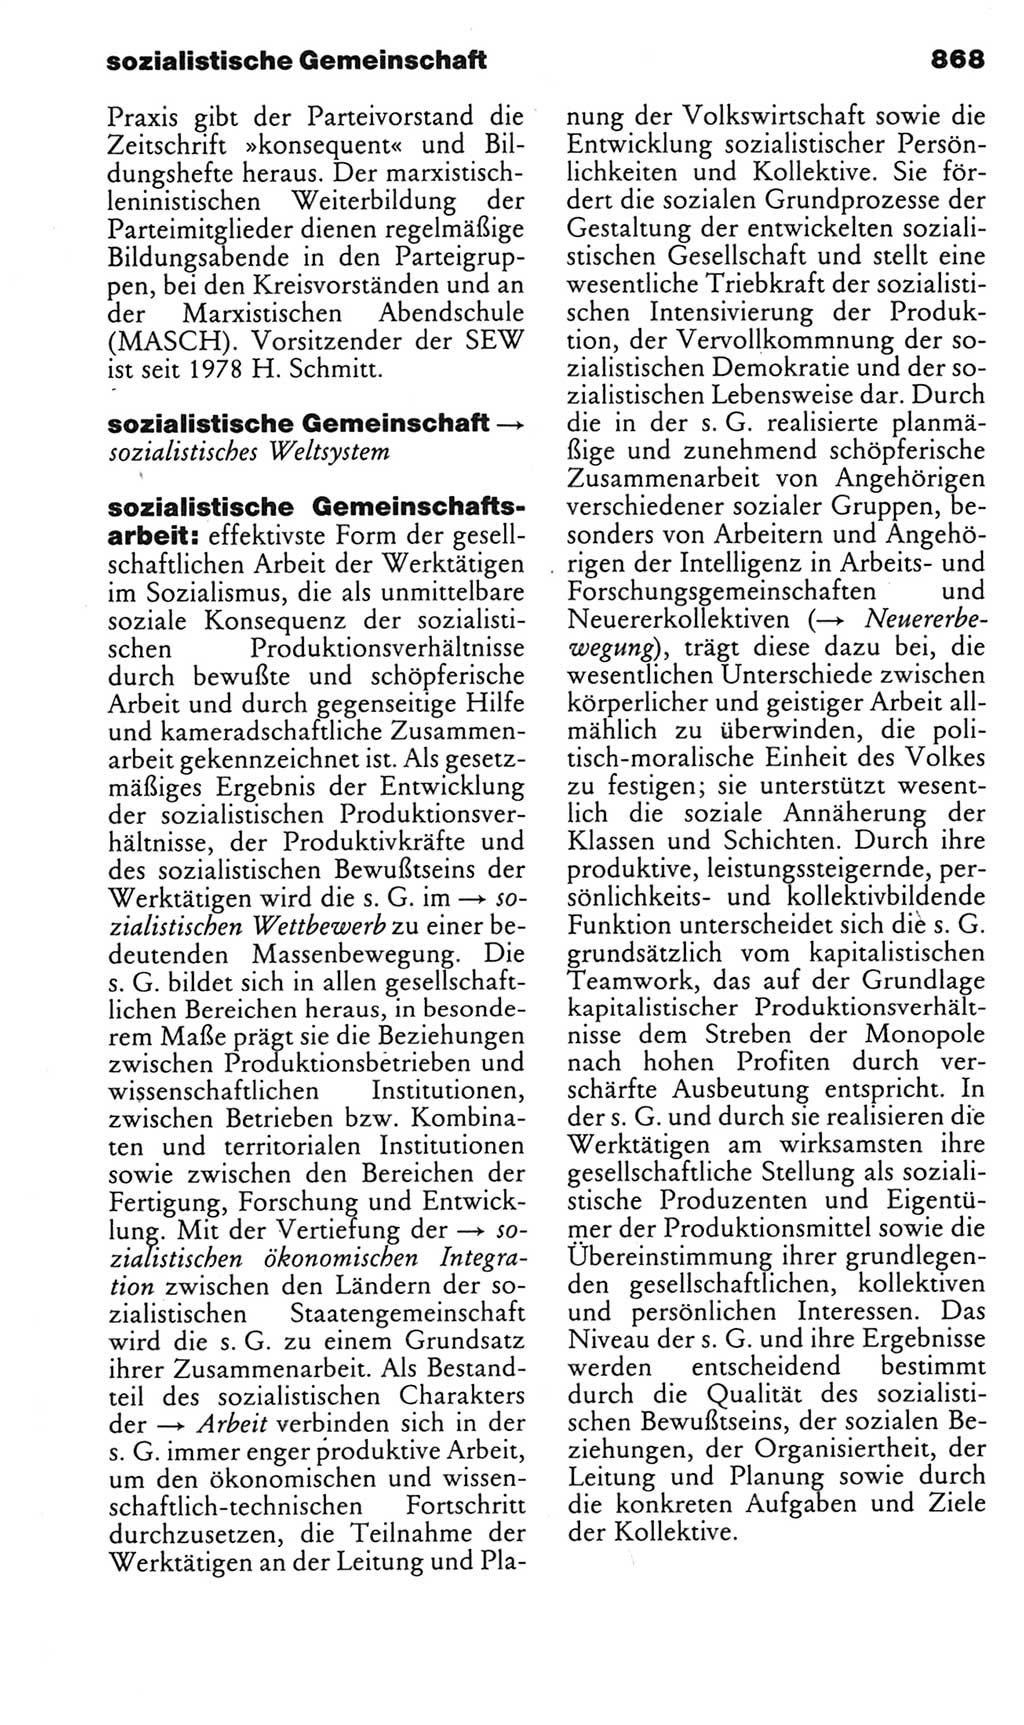 Kleines politisches Wörterbuch [Deutsche Demokratische Republik (DDR)] 1985, Seite 868 (Kl. pol. Wb. DDR 1985, S. 868)